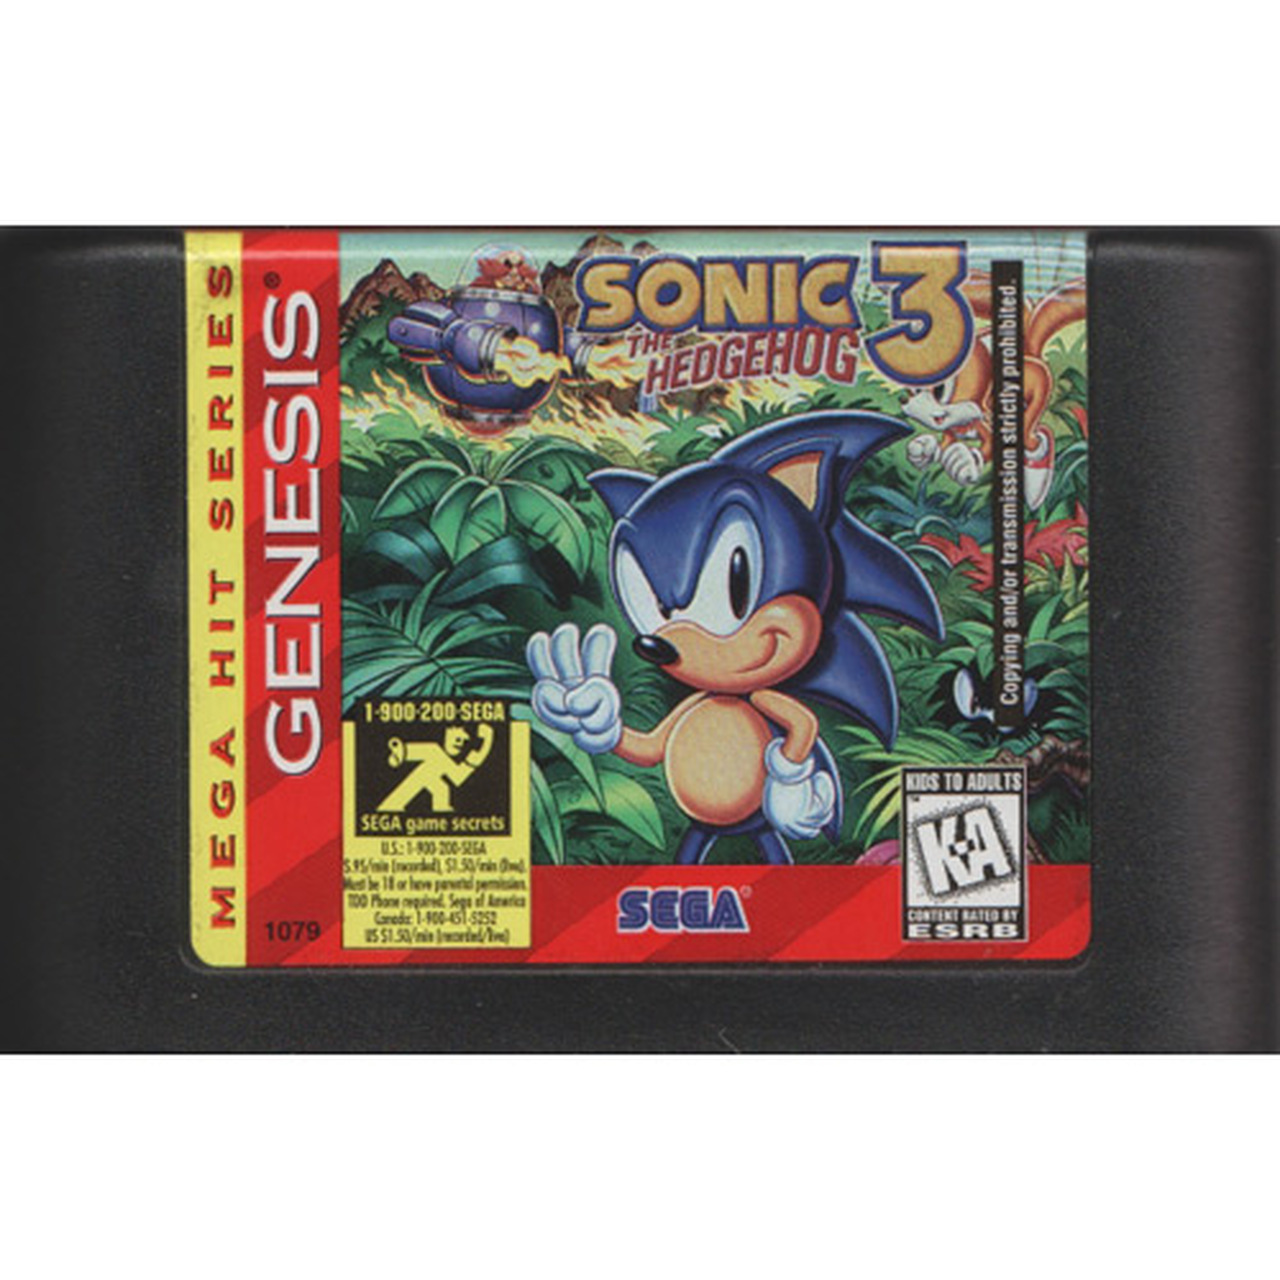 Sega genesis 80 games list